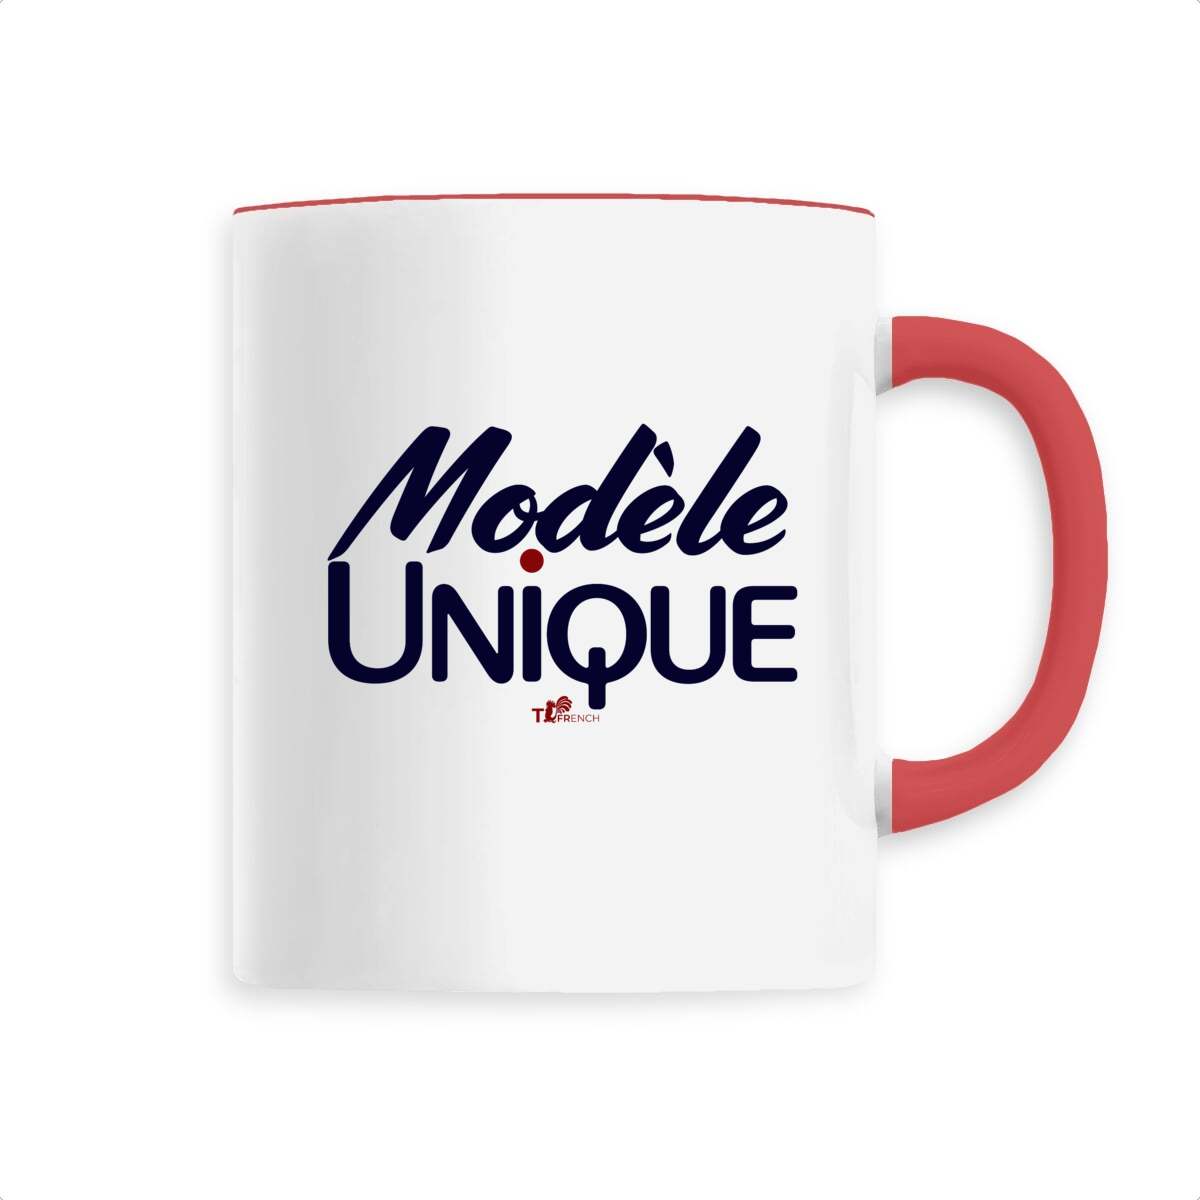 Mug Céramique - Modèle Unique, Mug Modèle unique de T-French, mug en céramique, mug idée cadeau, tasse idée cadeau, tasse modèle unique, mug humour, mug à offrir, tasse à offrir, mug original, mug rouge